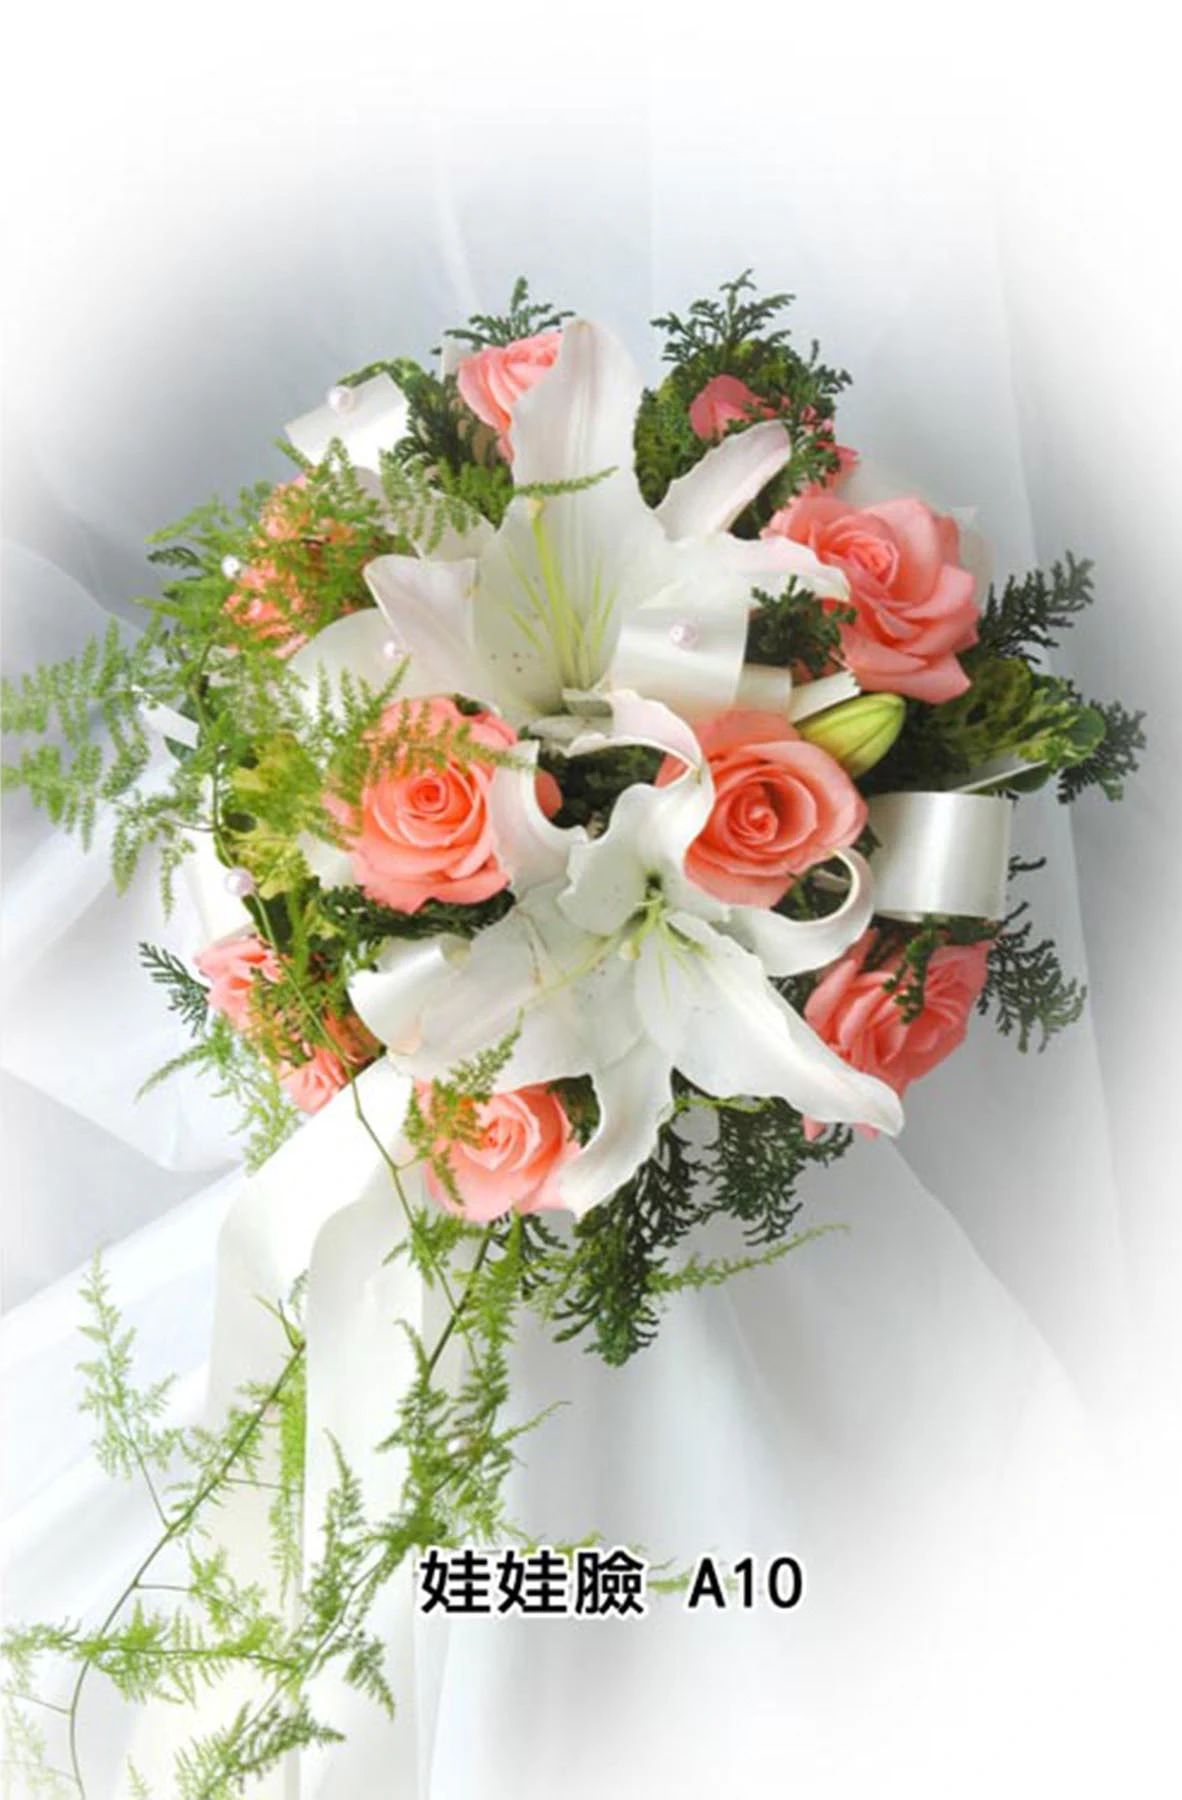 新娘捧花-花材有粉紅玫瑰花,香水百合,新娘草,花束型